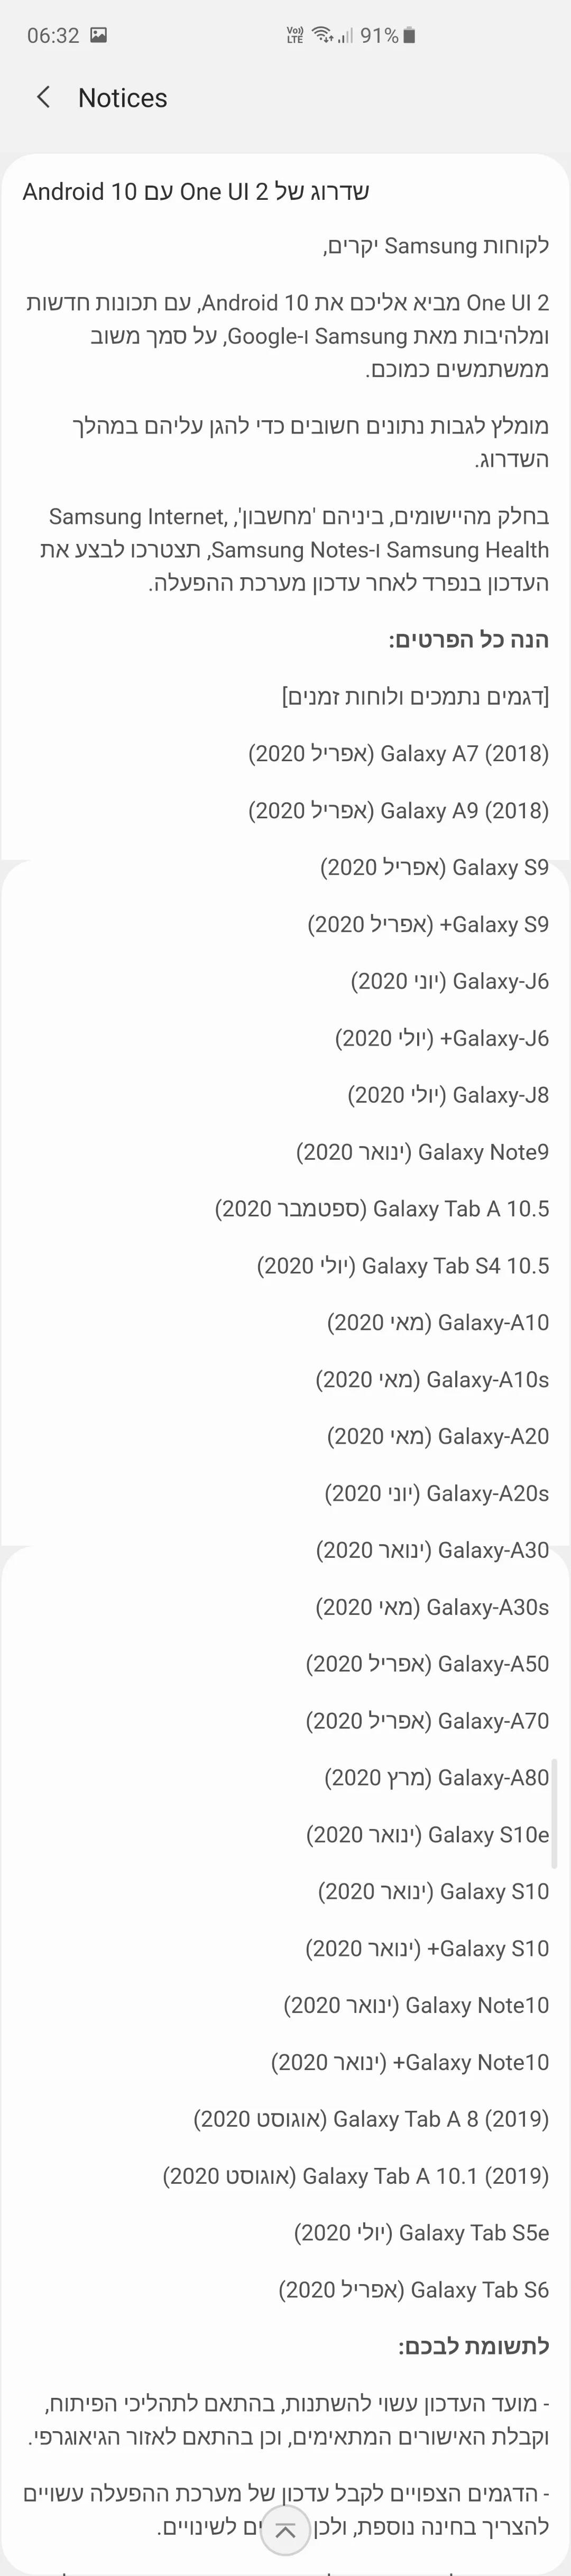 Erscheinungsdatum von Android 10 Samsung-Handys